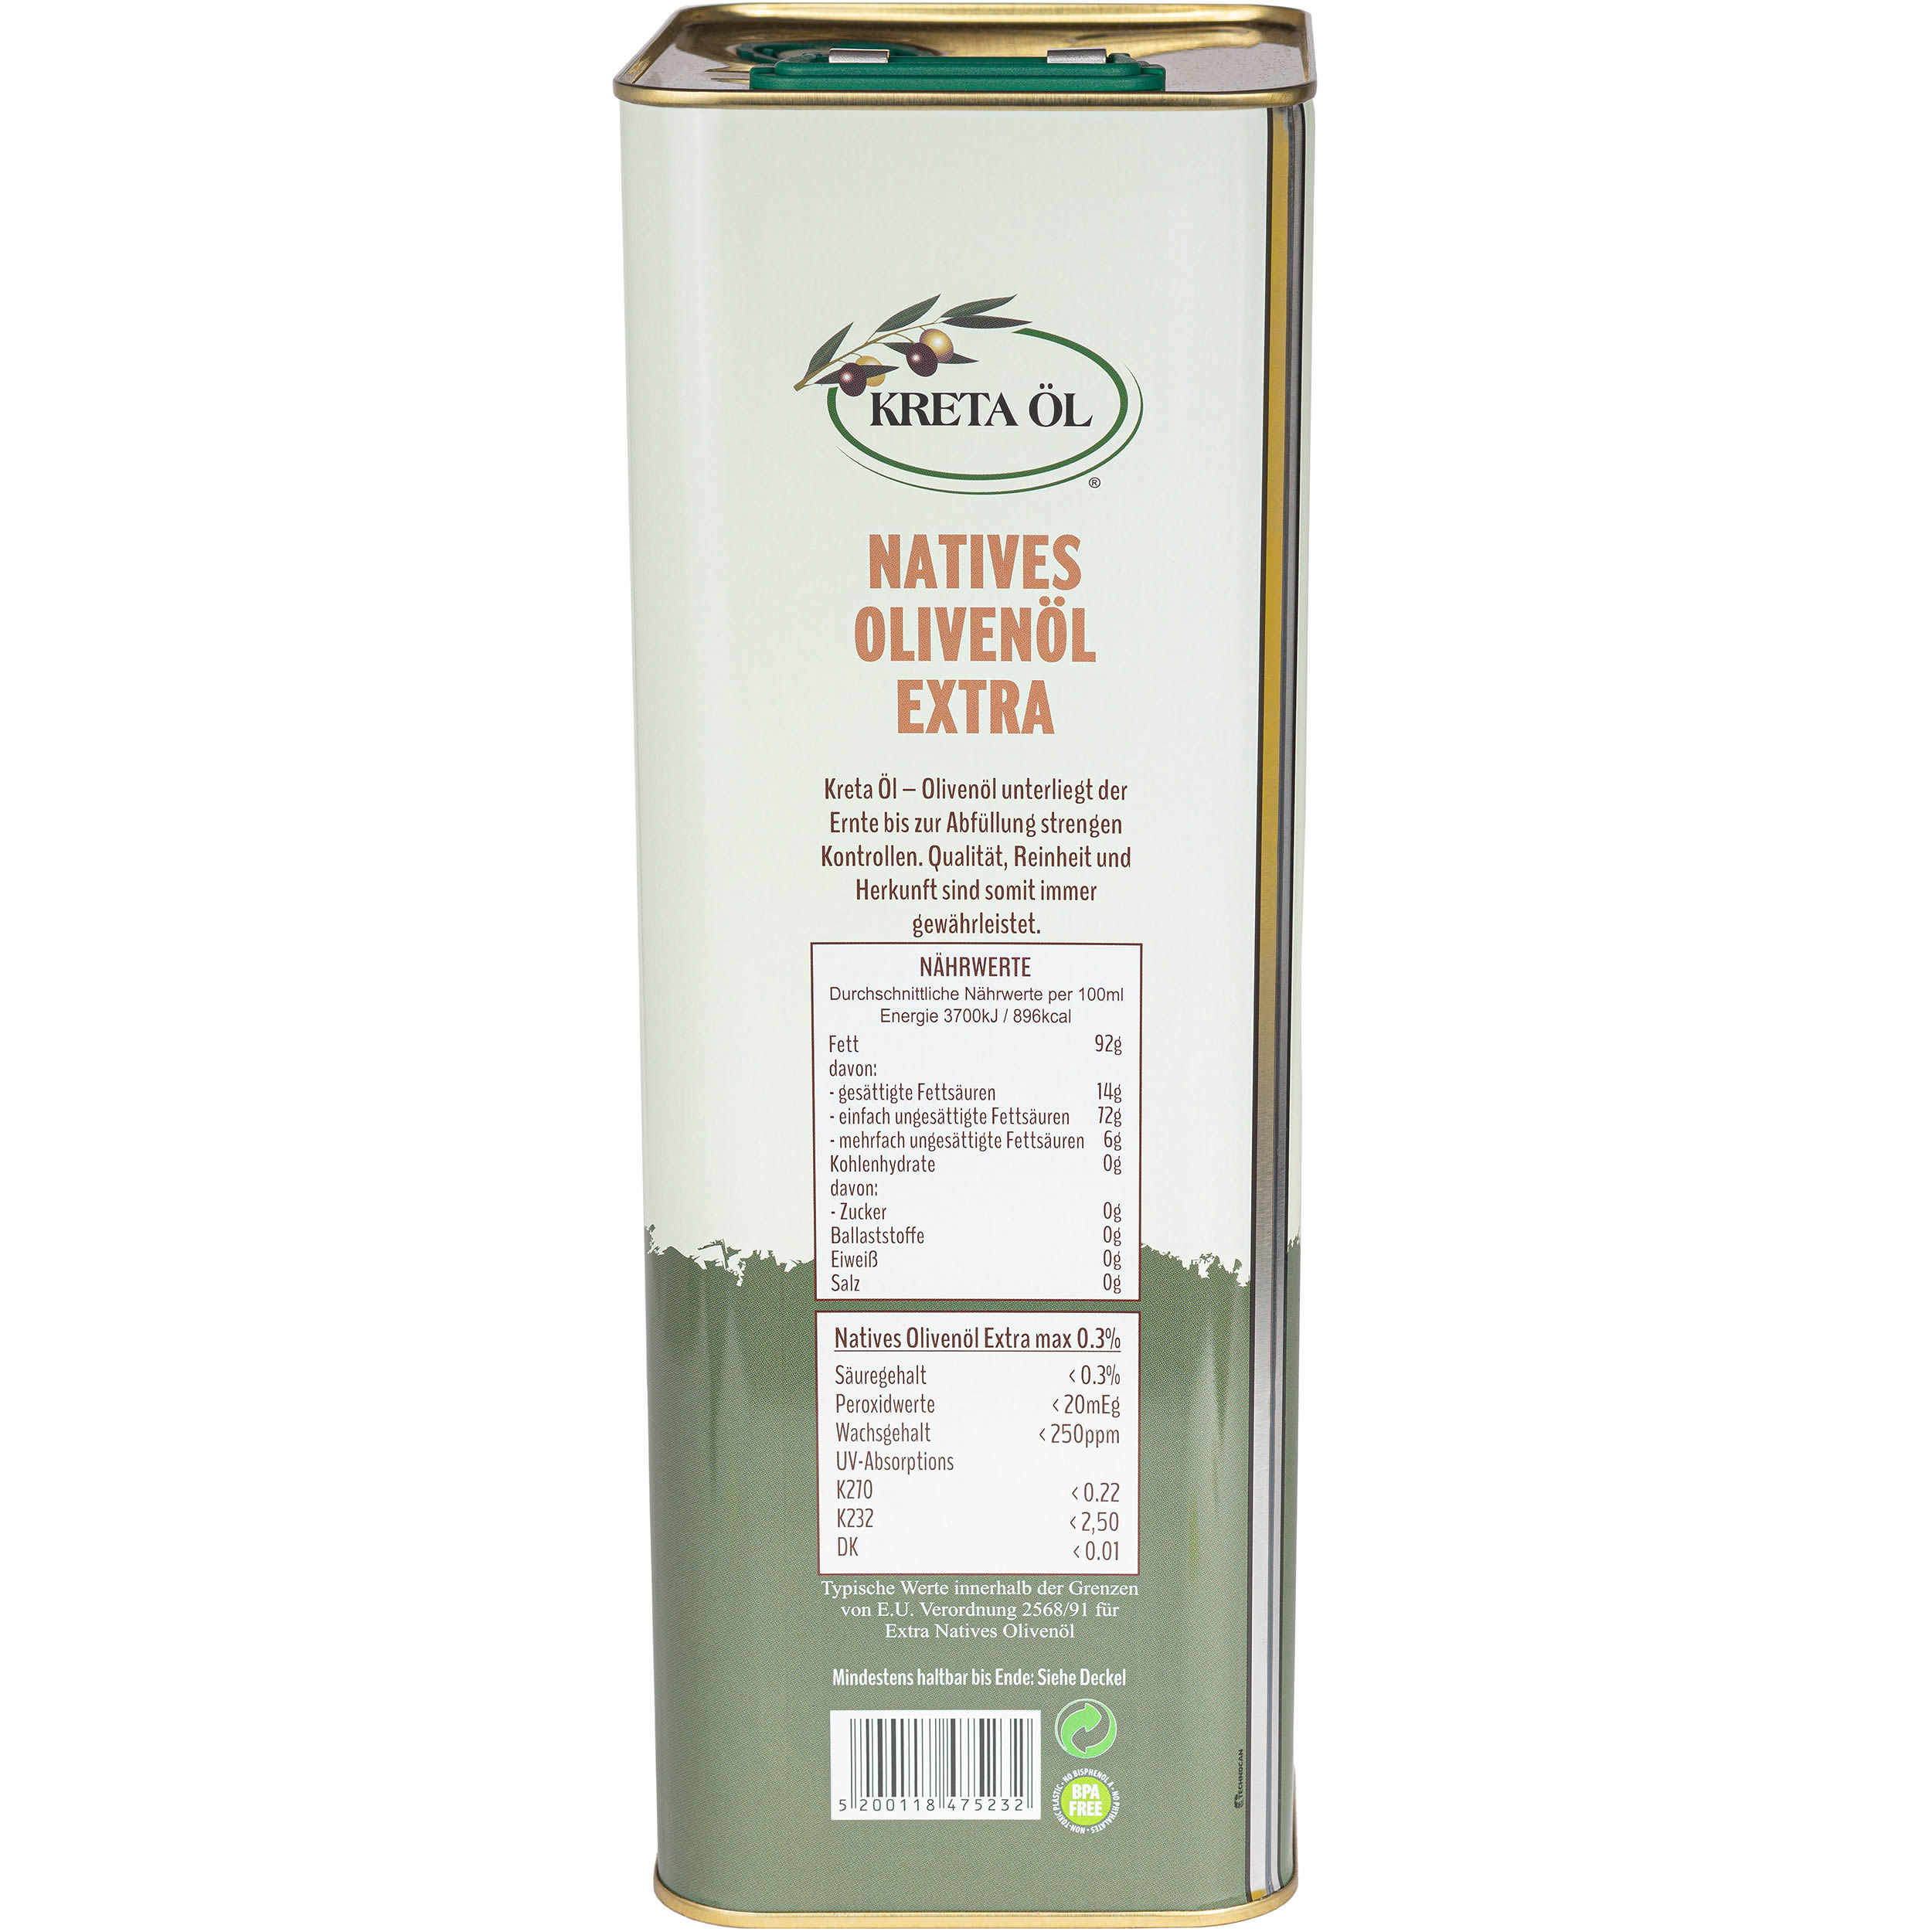 Kreta Öl ® - Extra natives Olivenöl g.U. mit max. 0.3 % Säuregehalt 5 l